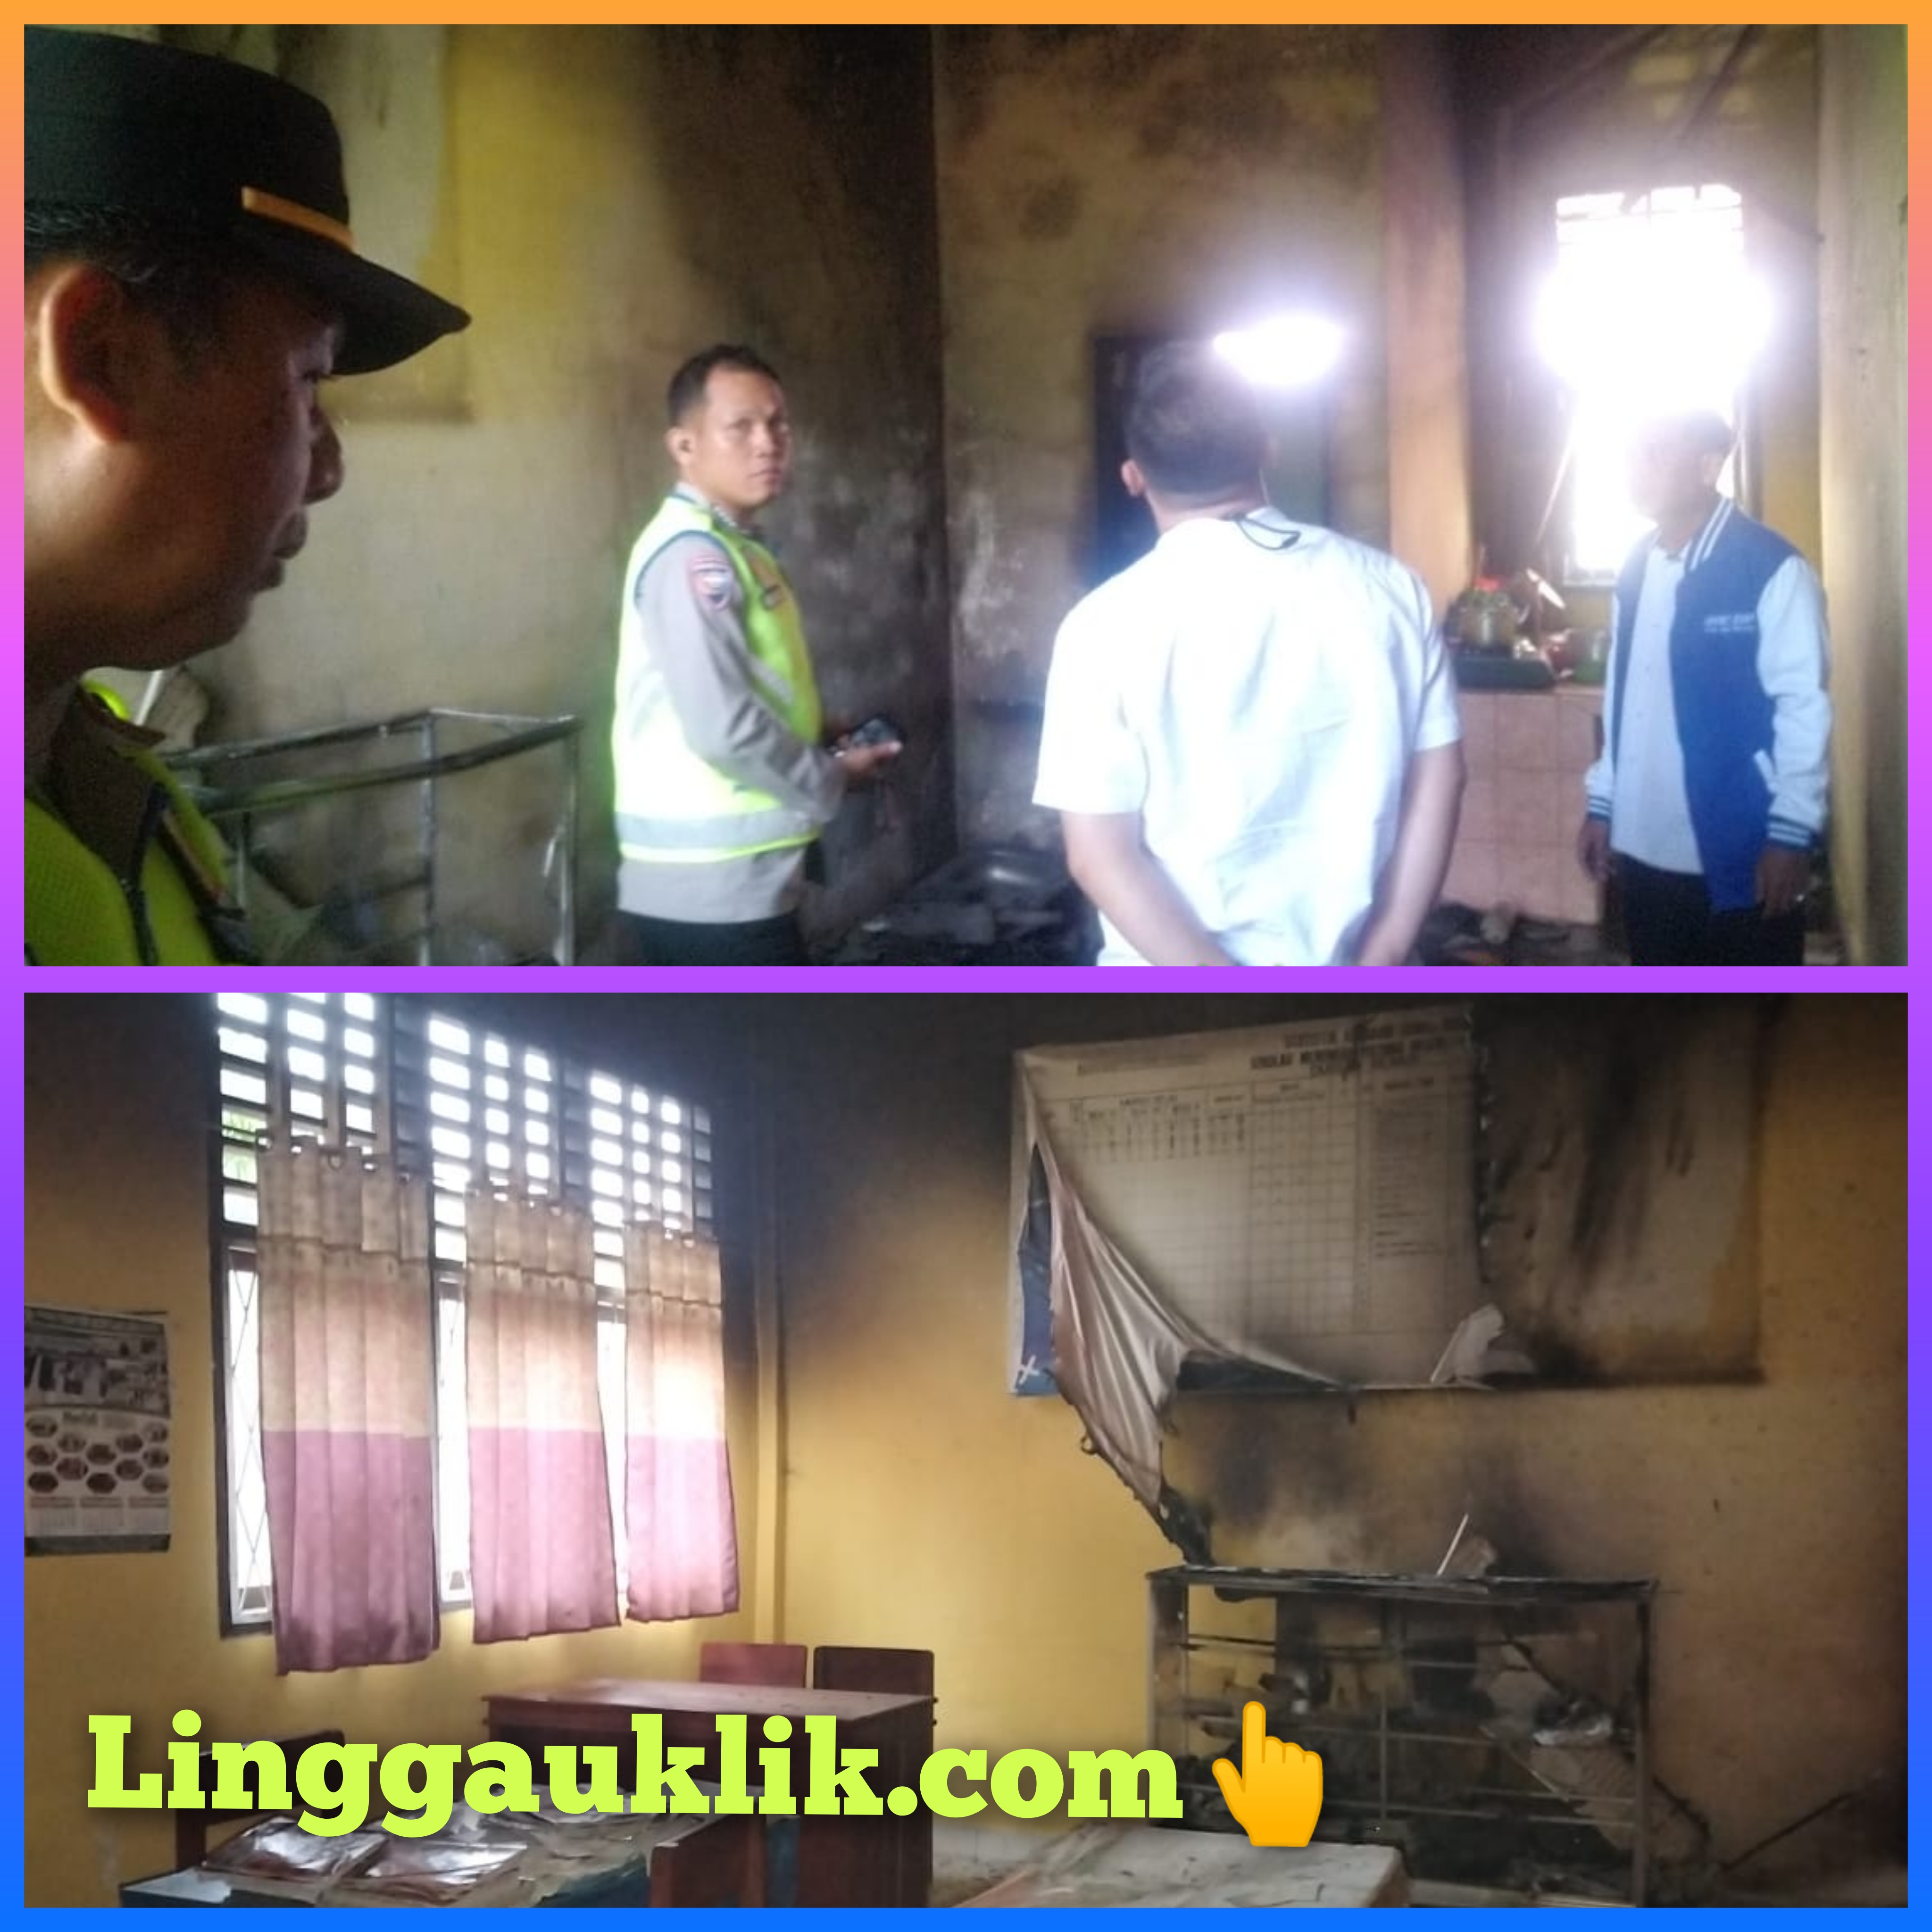 Kantor SMP Negeri Durian Remuk Terbakar, Polres Musi Rawas Datangi TKP Lakukan Penyelidikan